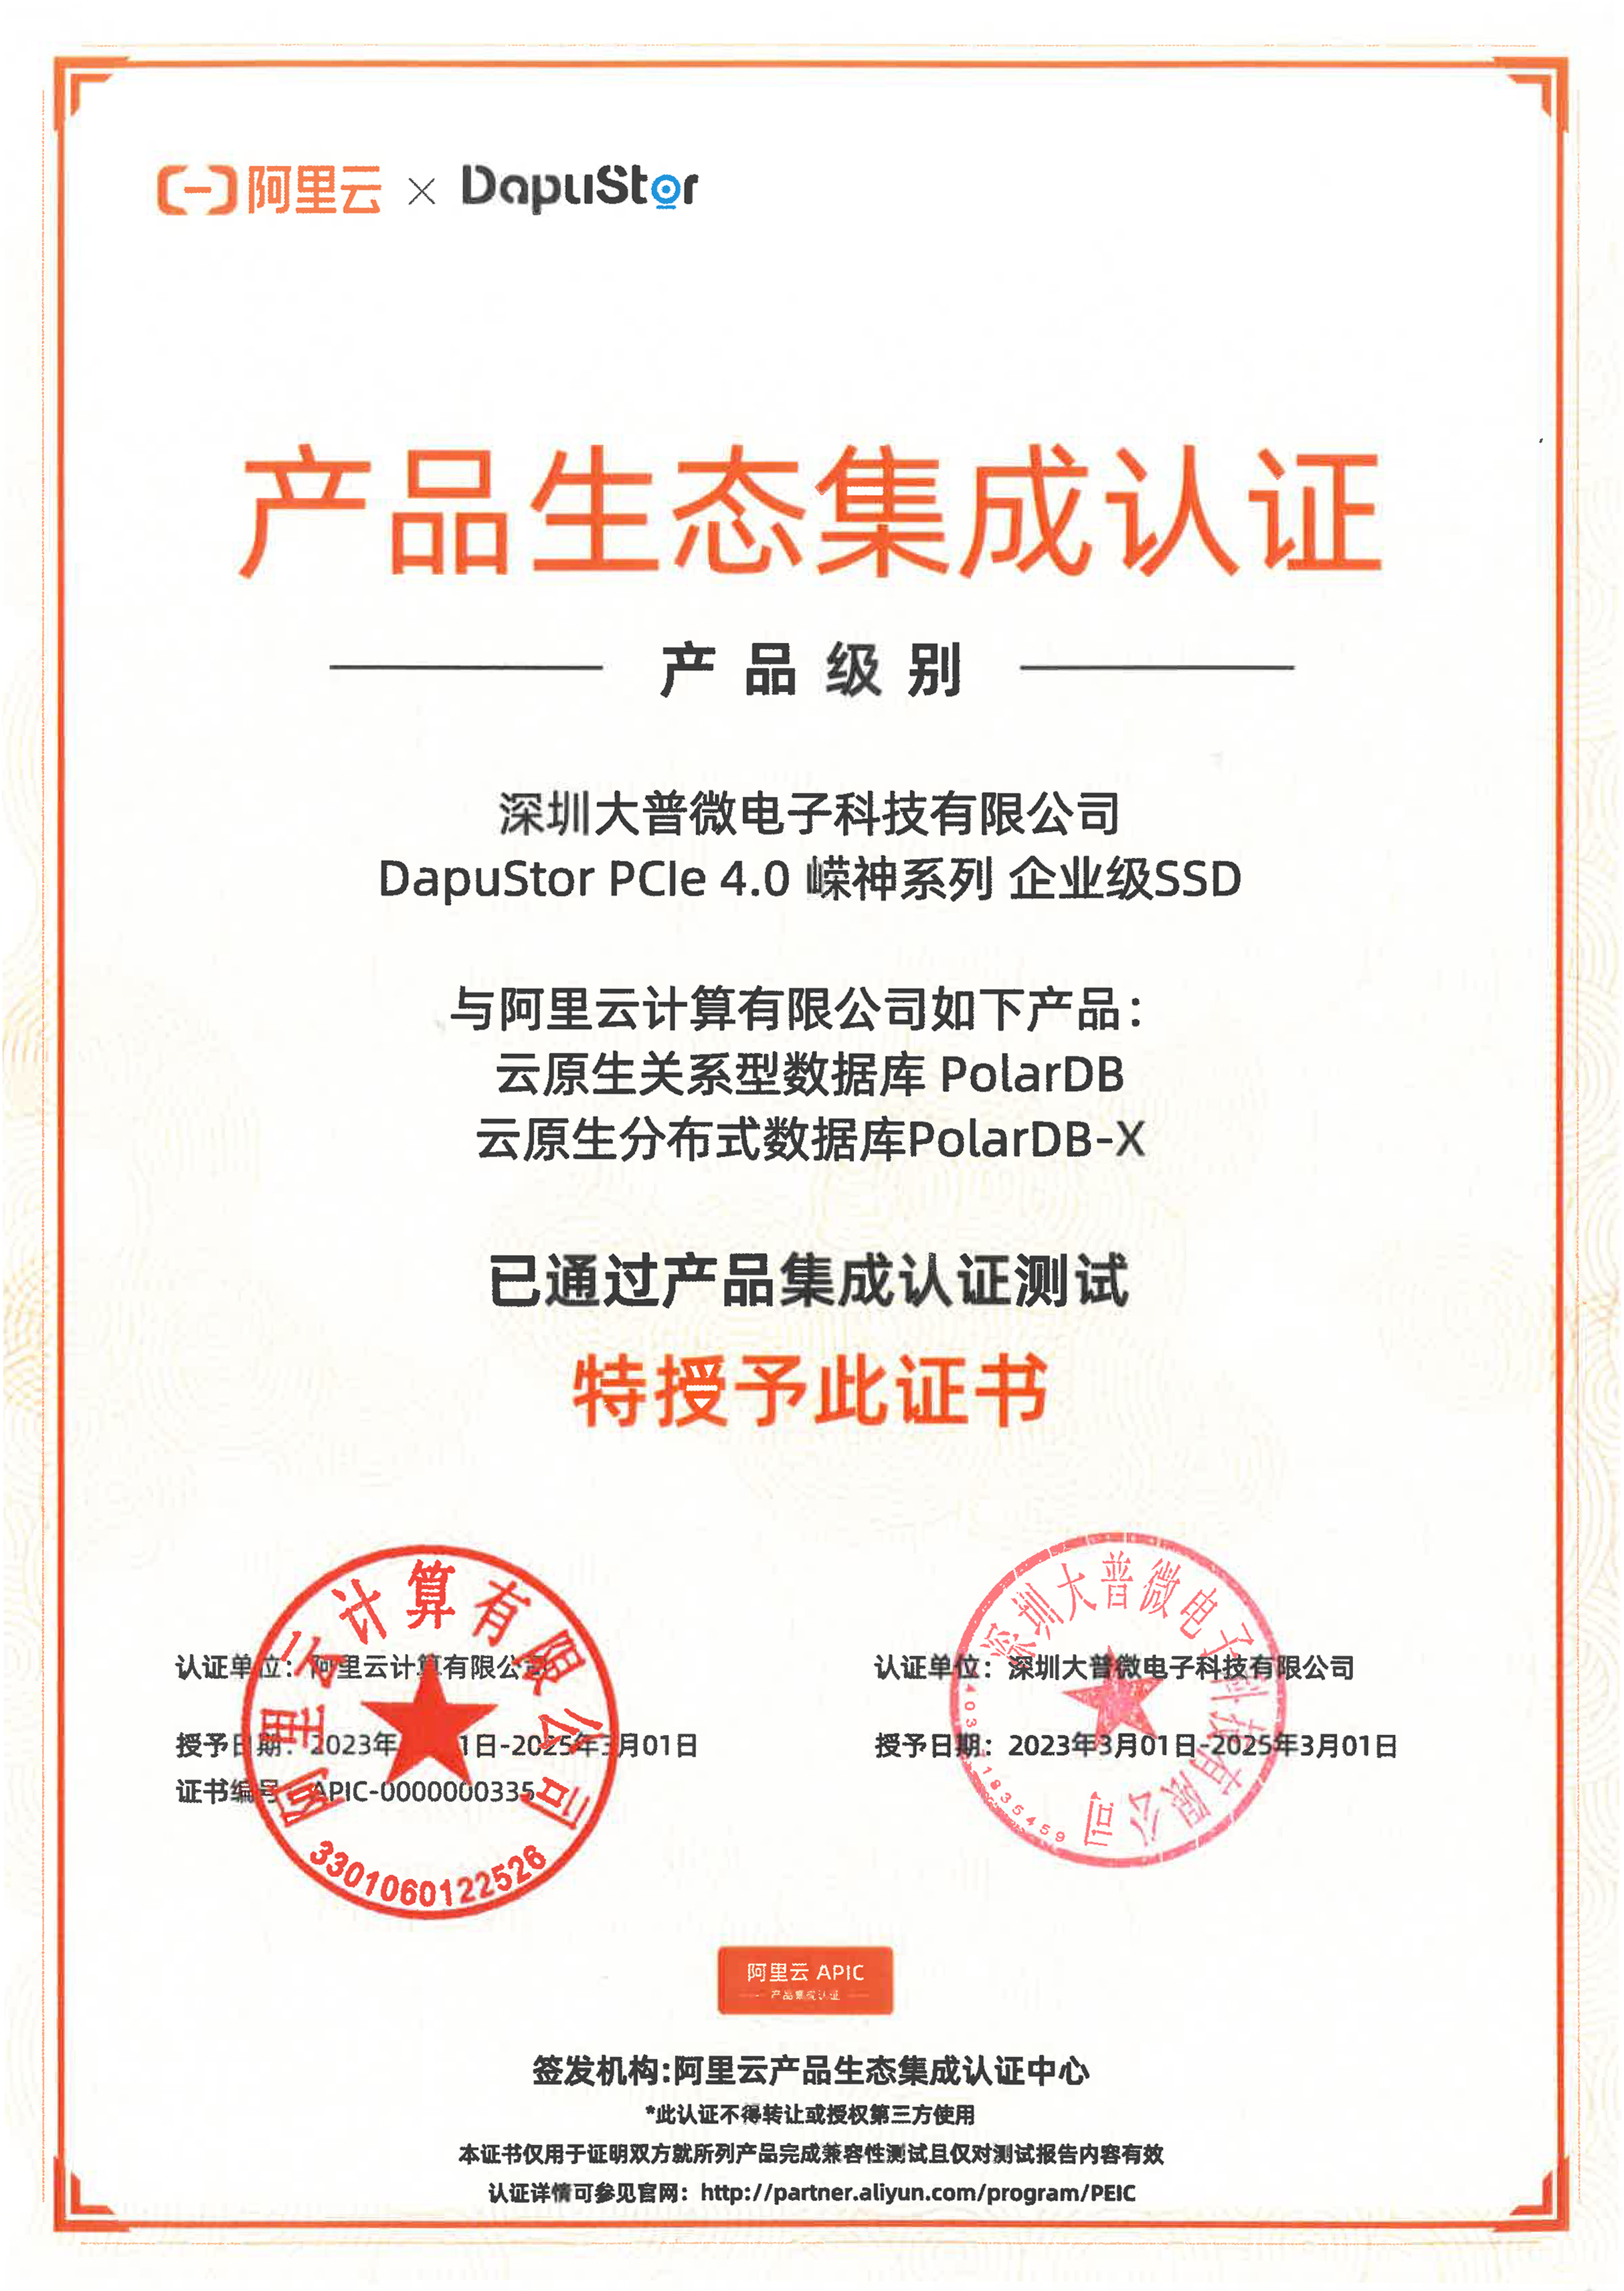 大普微DapuStor完成阿里云PolarDB数据库产品生态集成认证